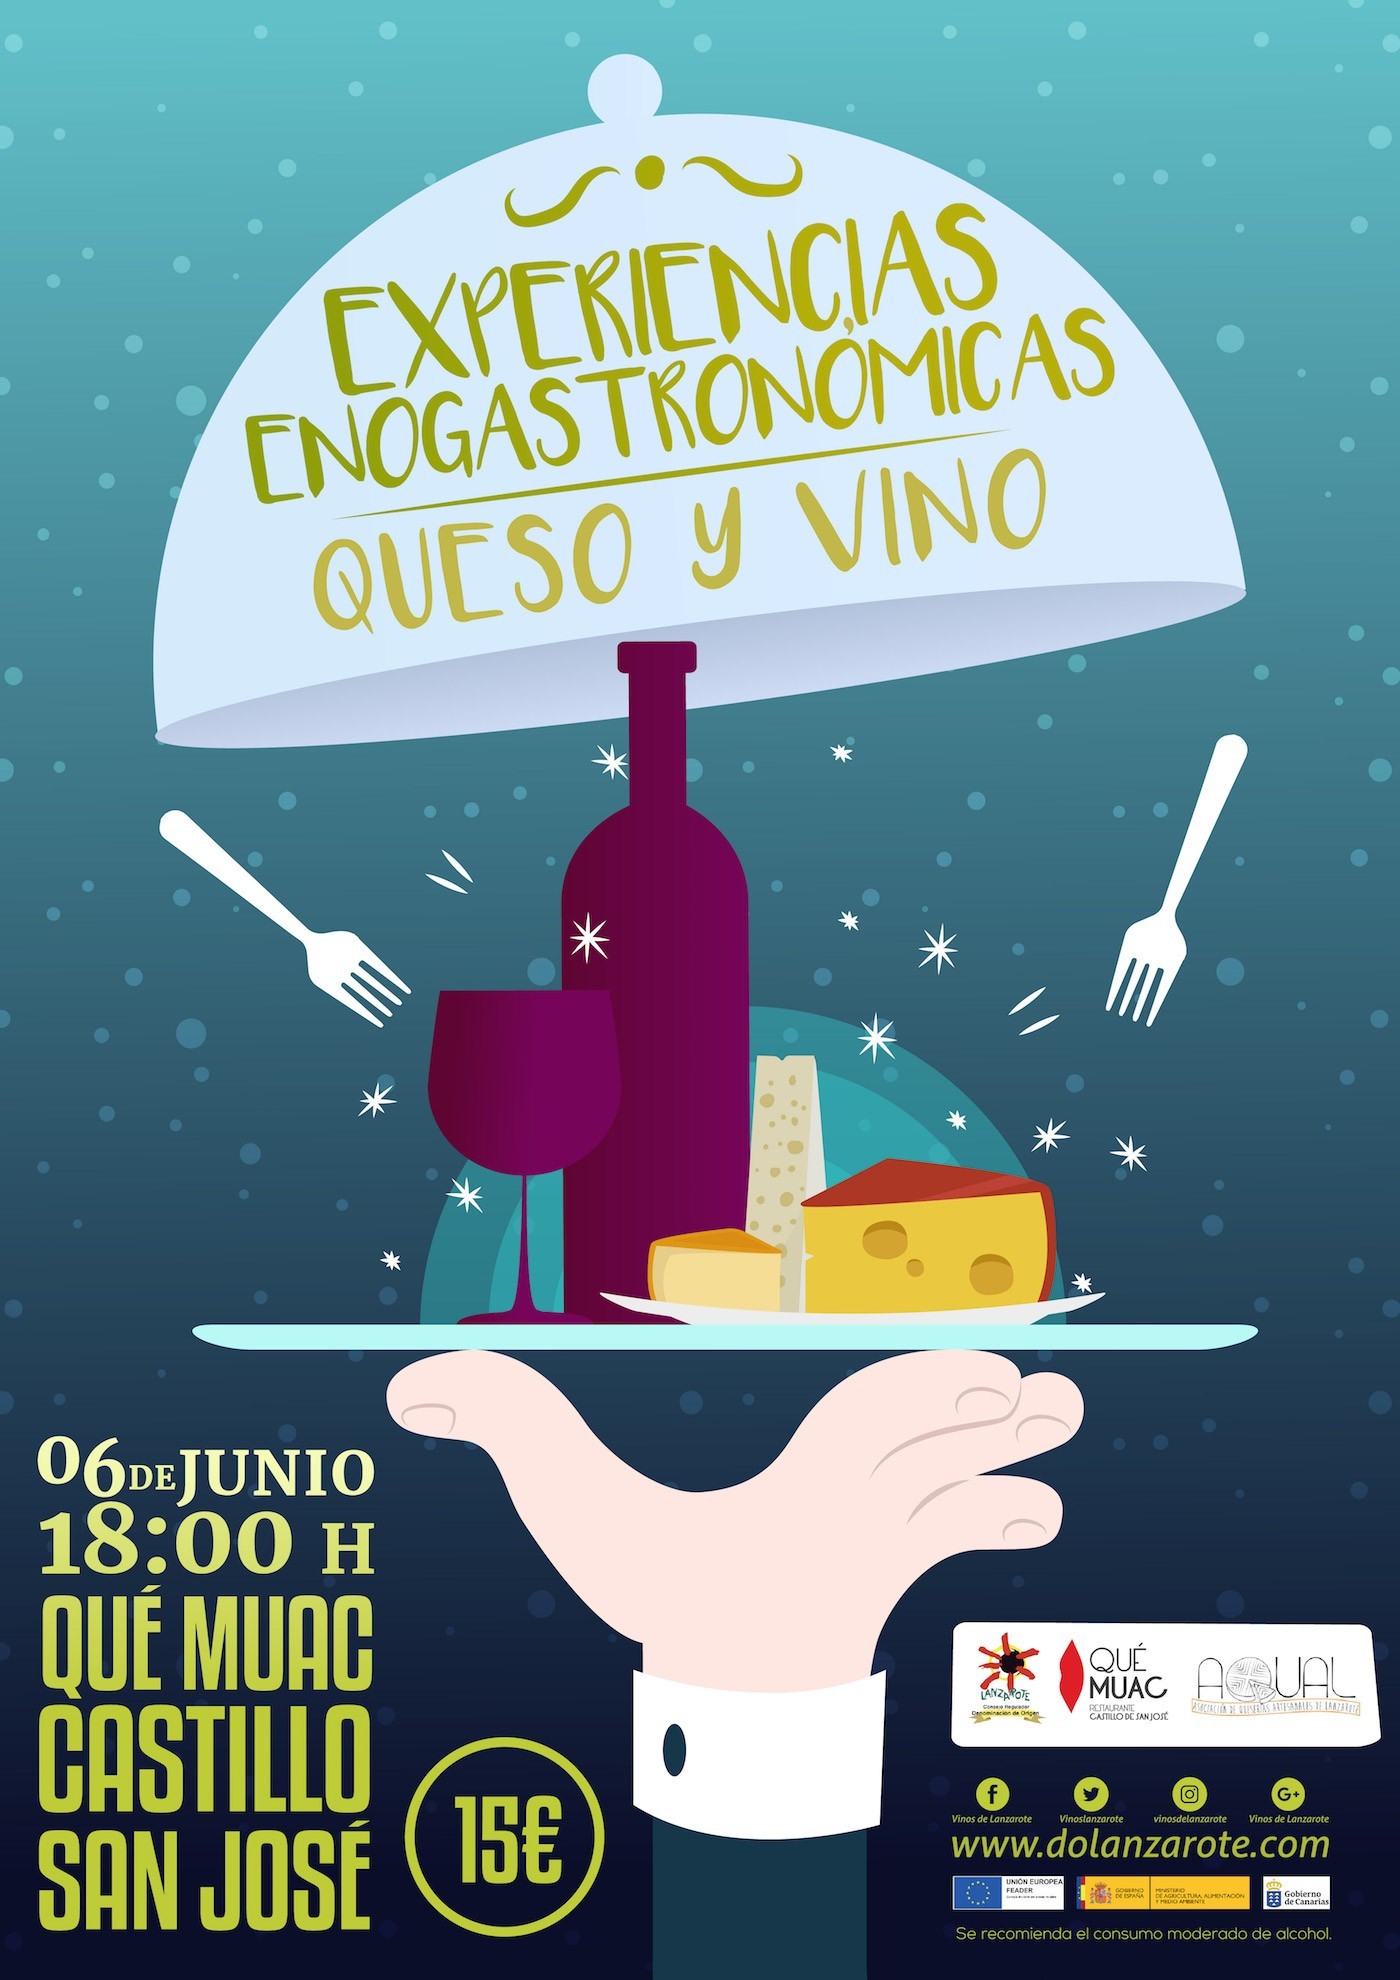 Experiencias-enogastronómicas-cata-de-quesos-artesanales-de-Lanzarote-y-vinos